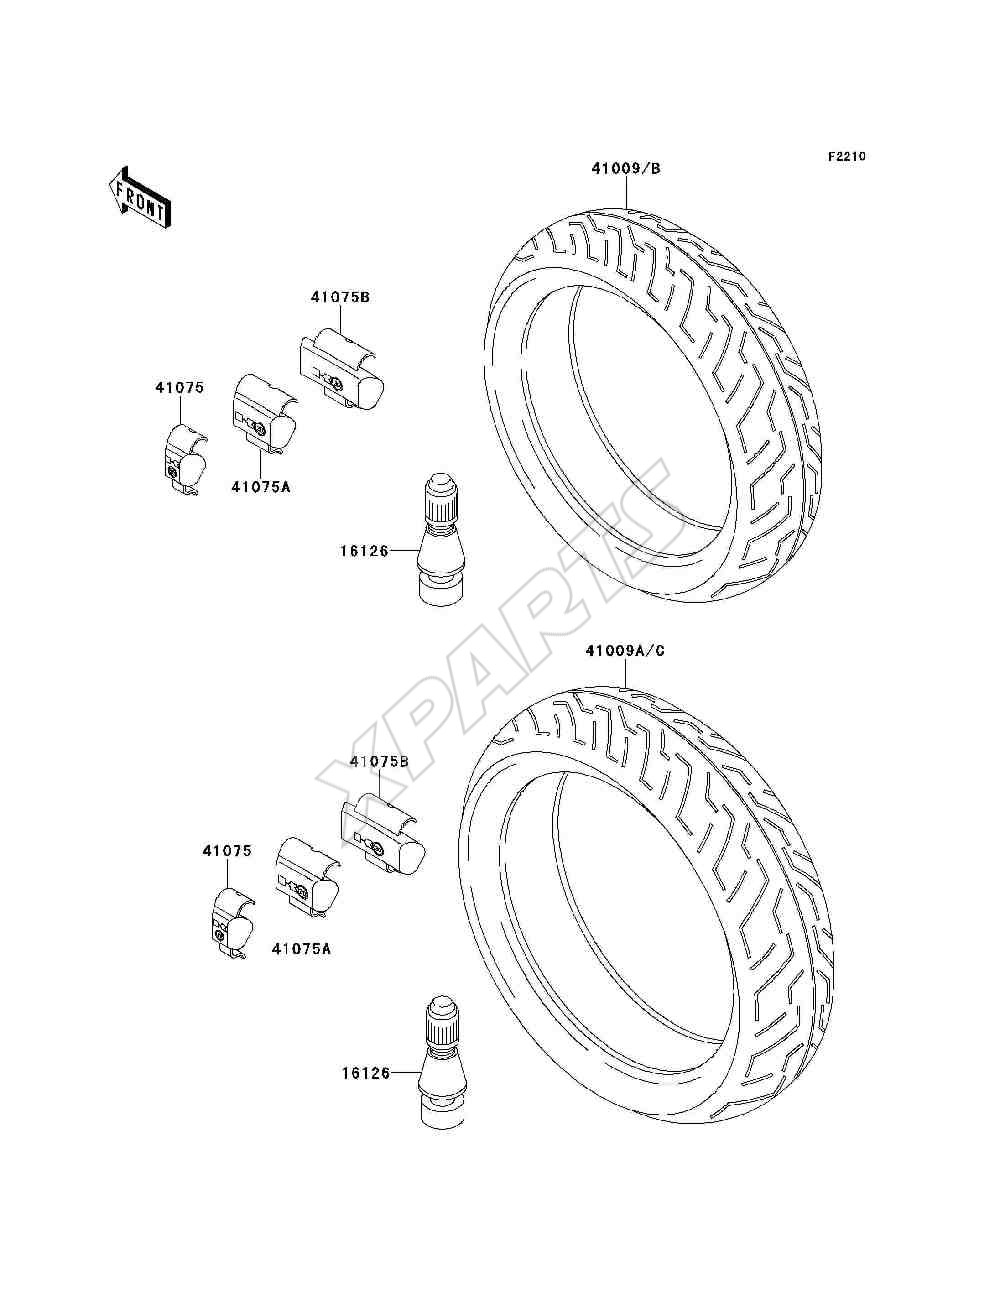 Bild für Kategorie Tires